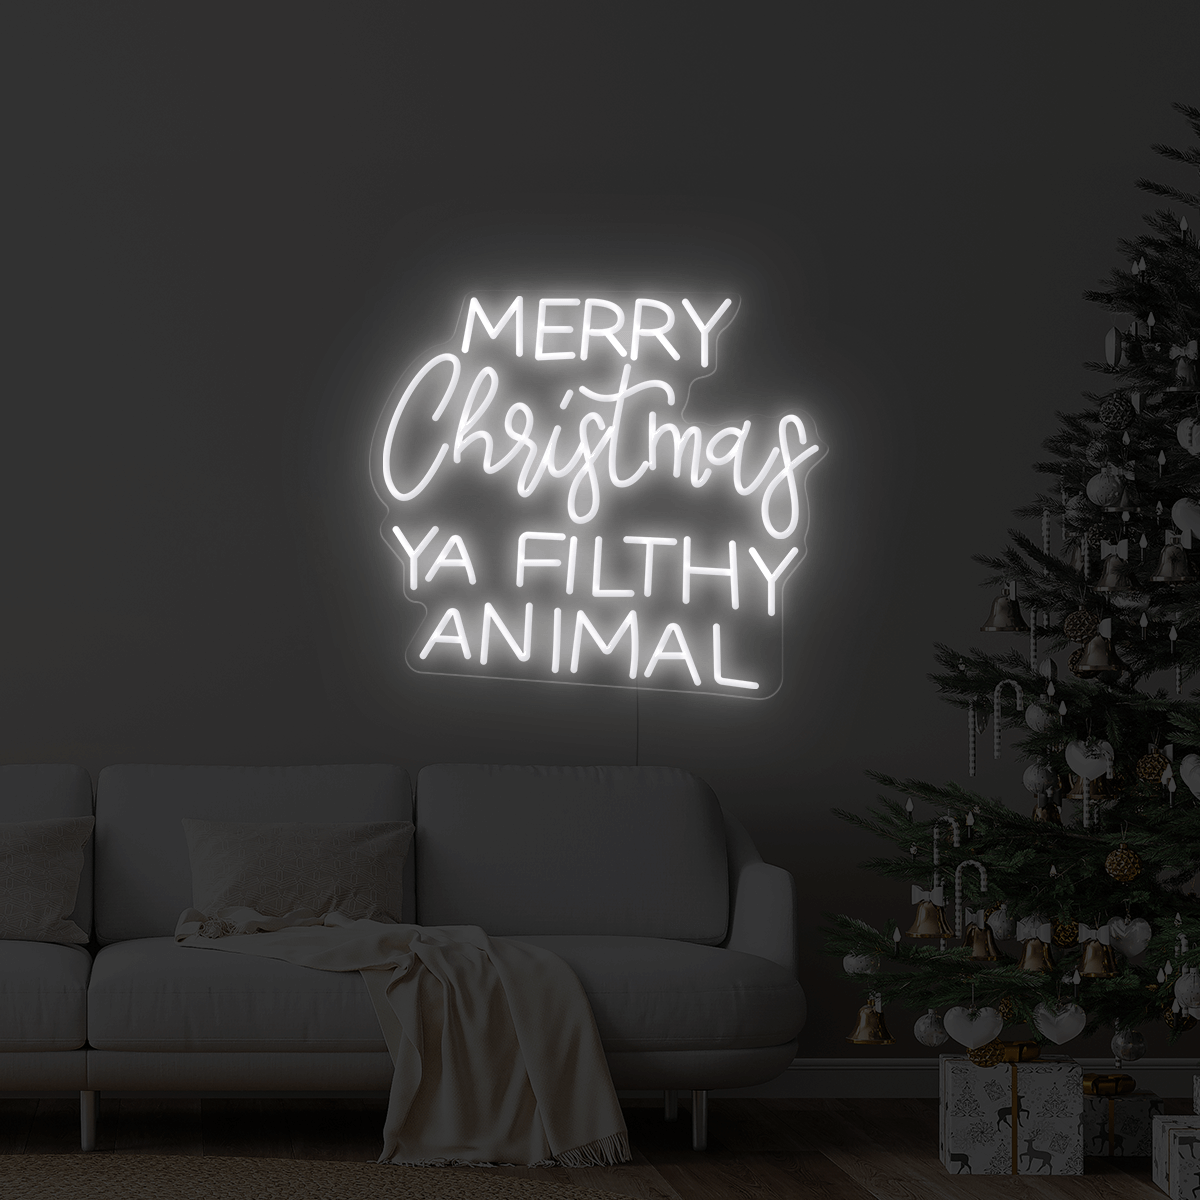 Merry Christmas Ya Filthy Animal LED Neon Sign